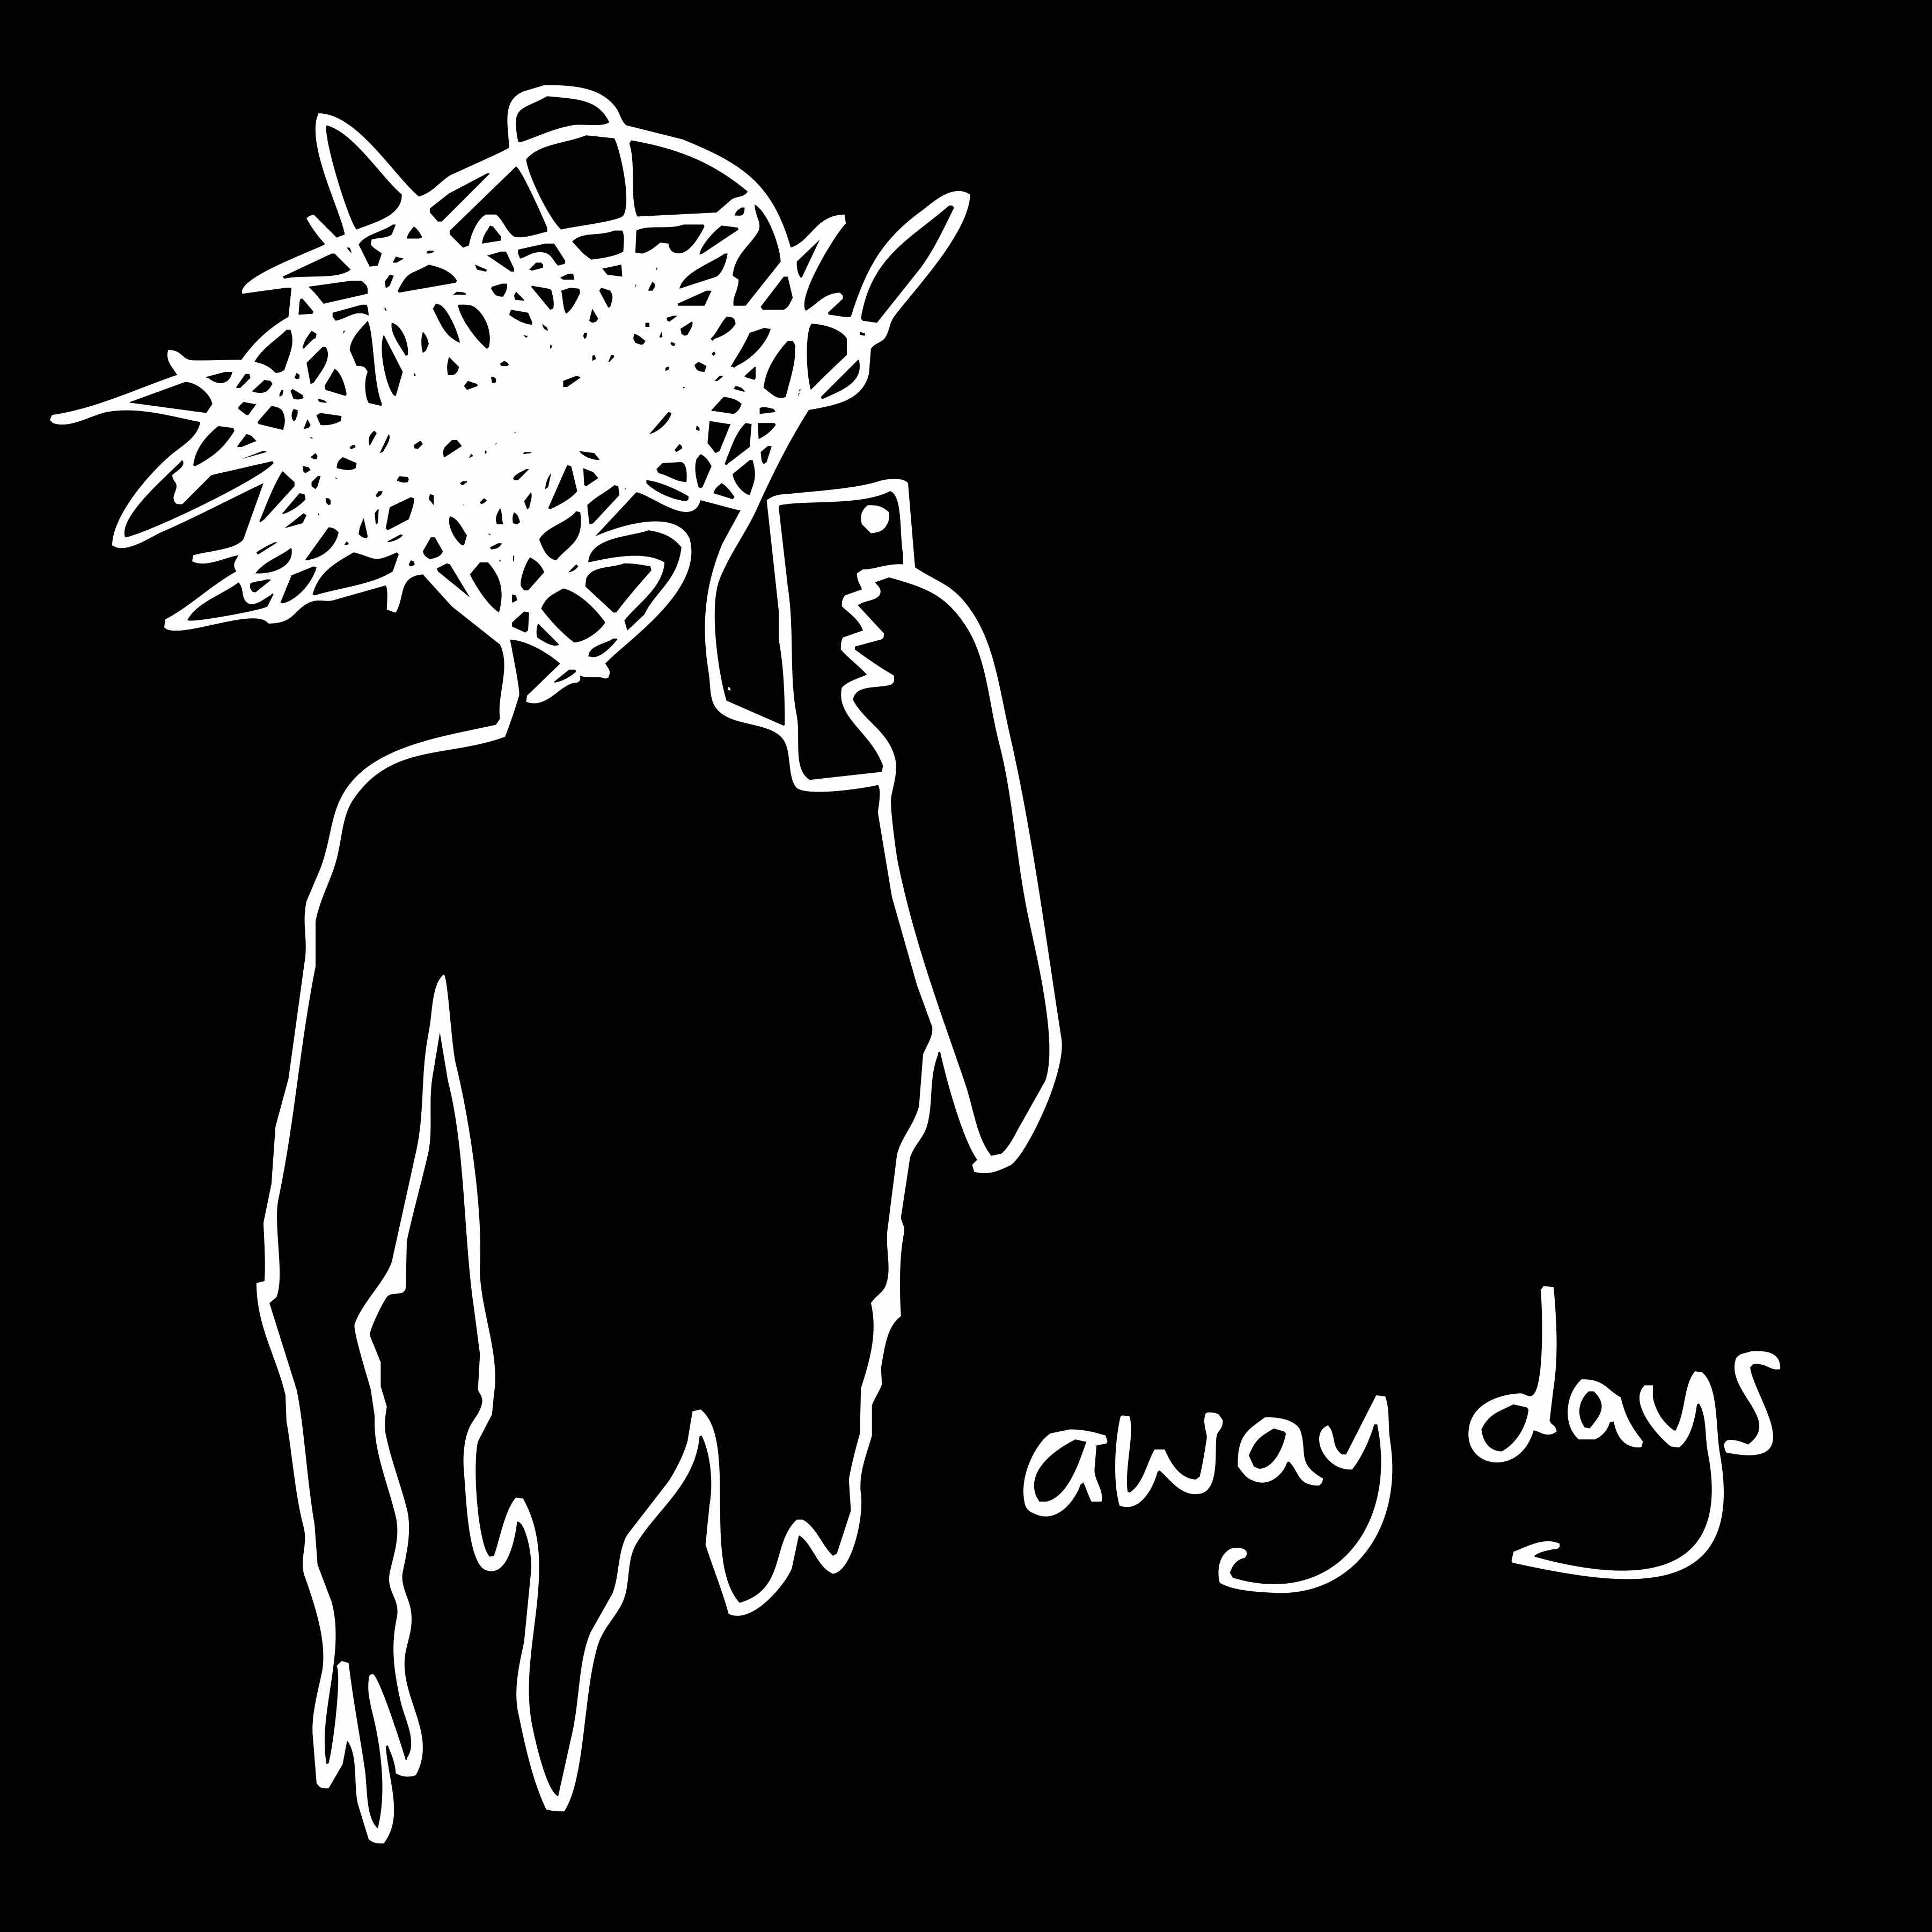 away days